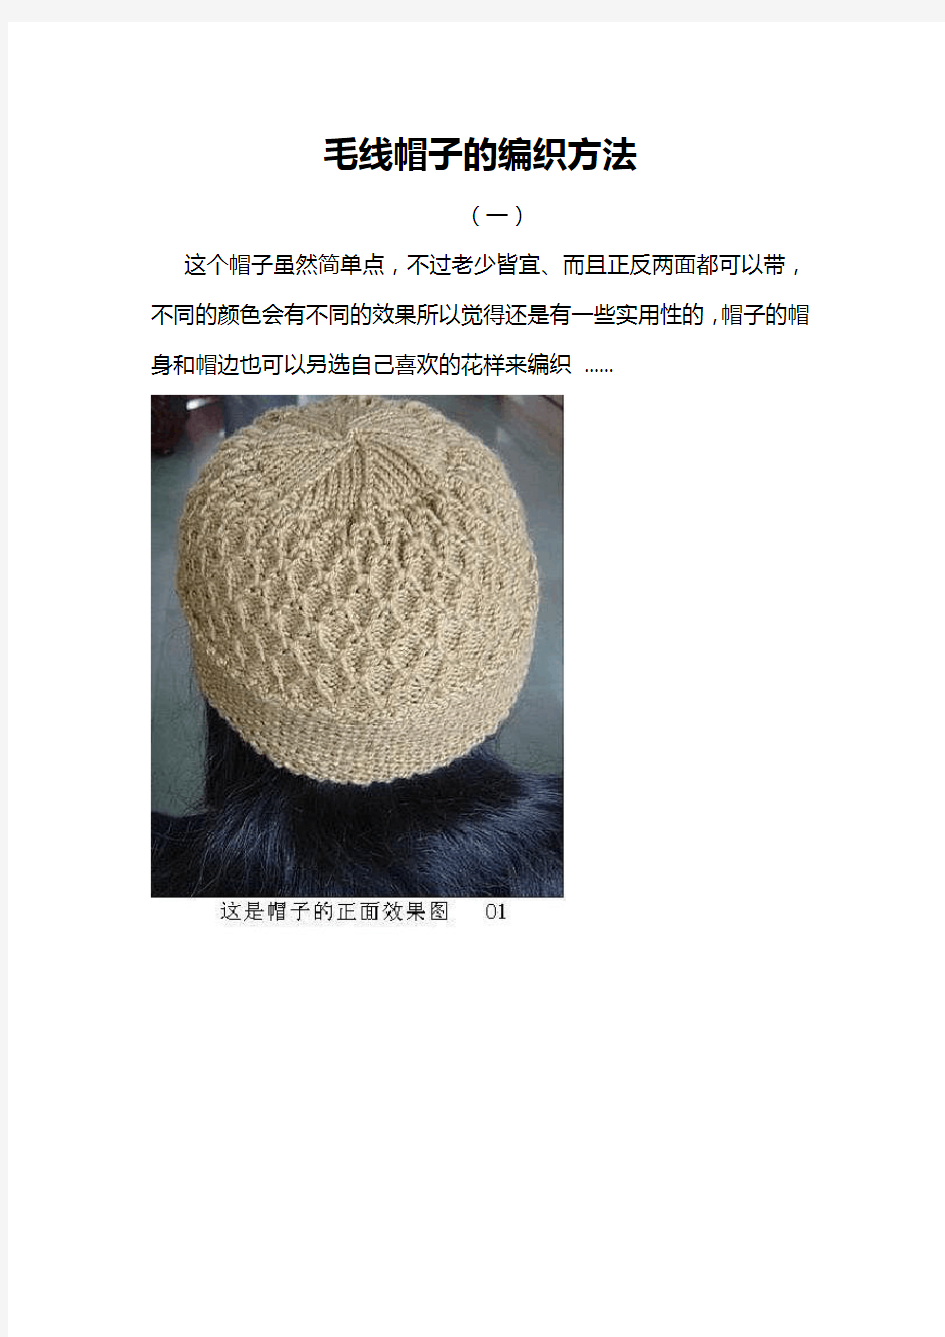 毛线帽子的编织方法(5组图解) 